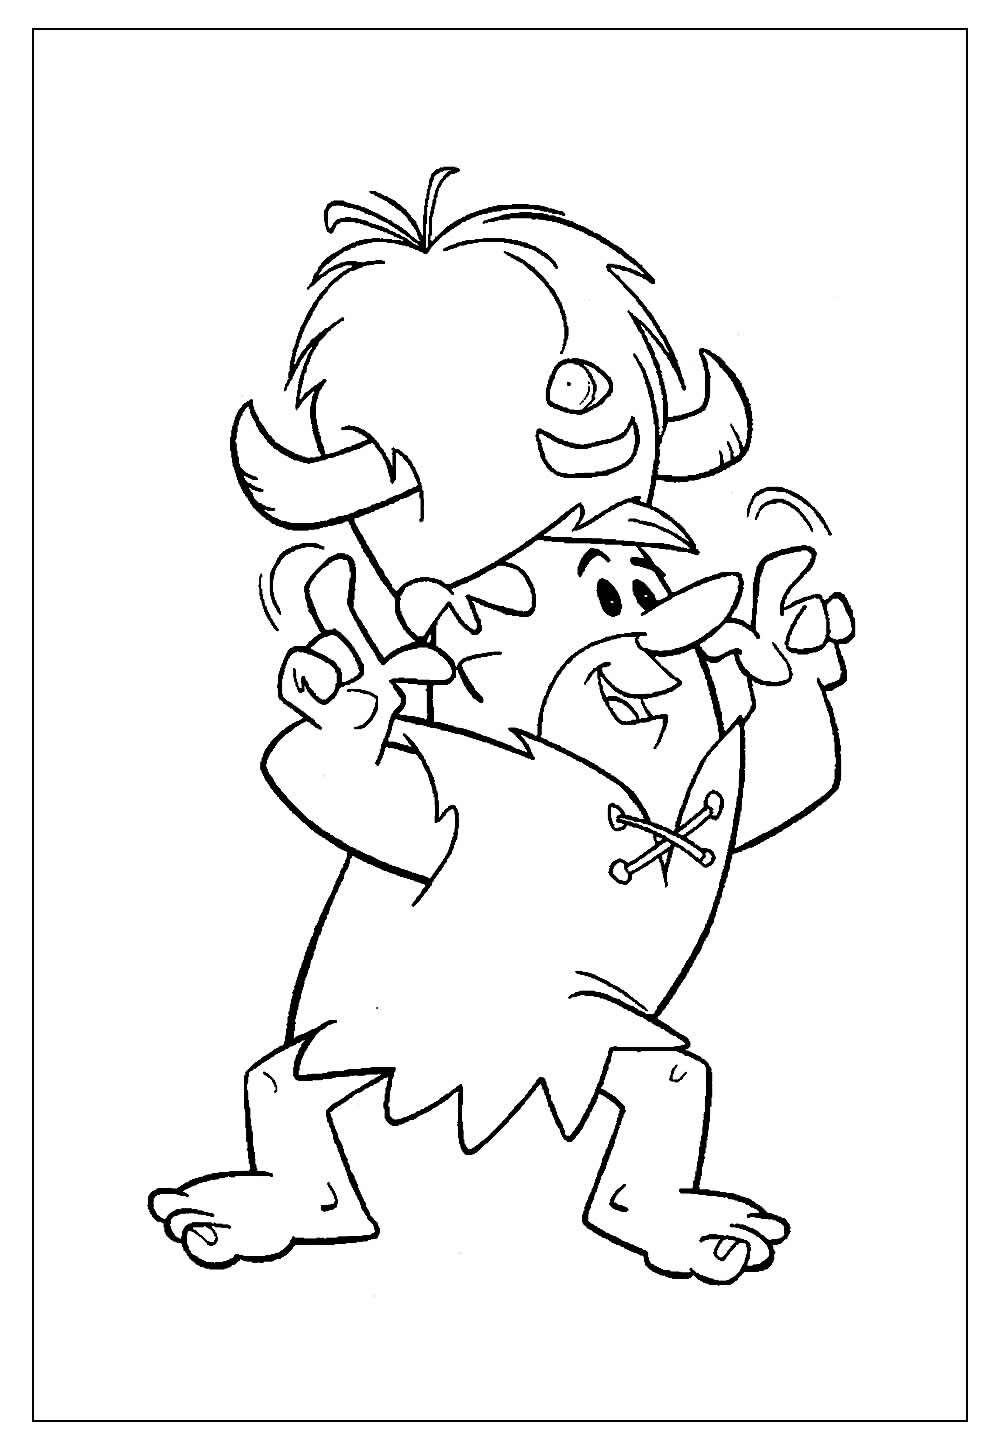 Desenhos de Flintstones para colorir - Barney